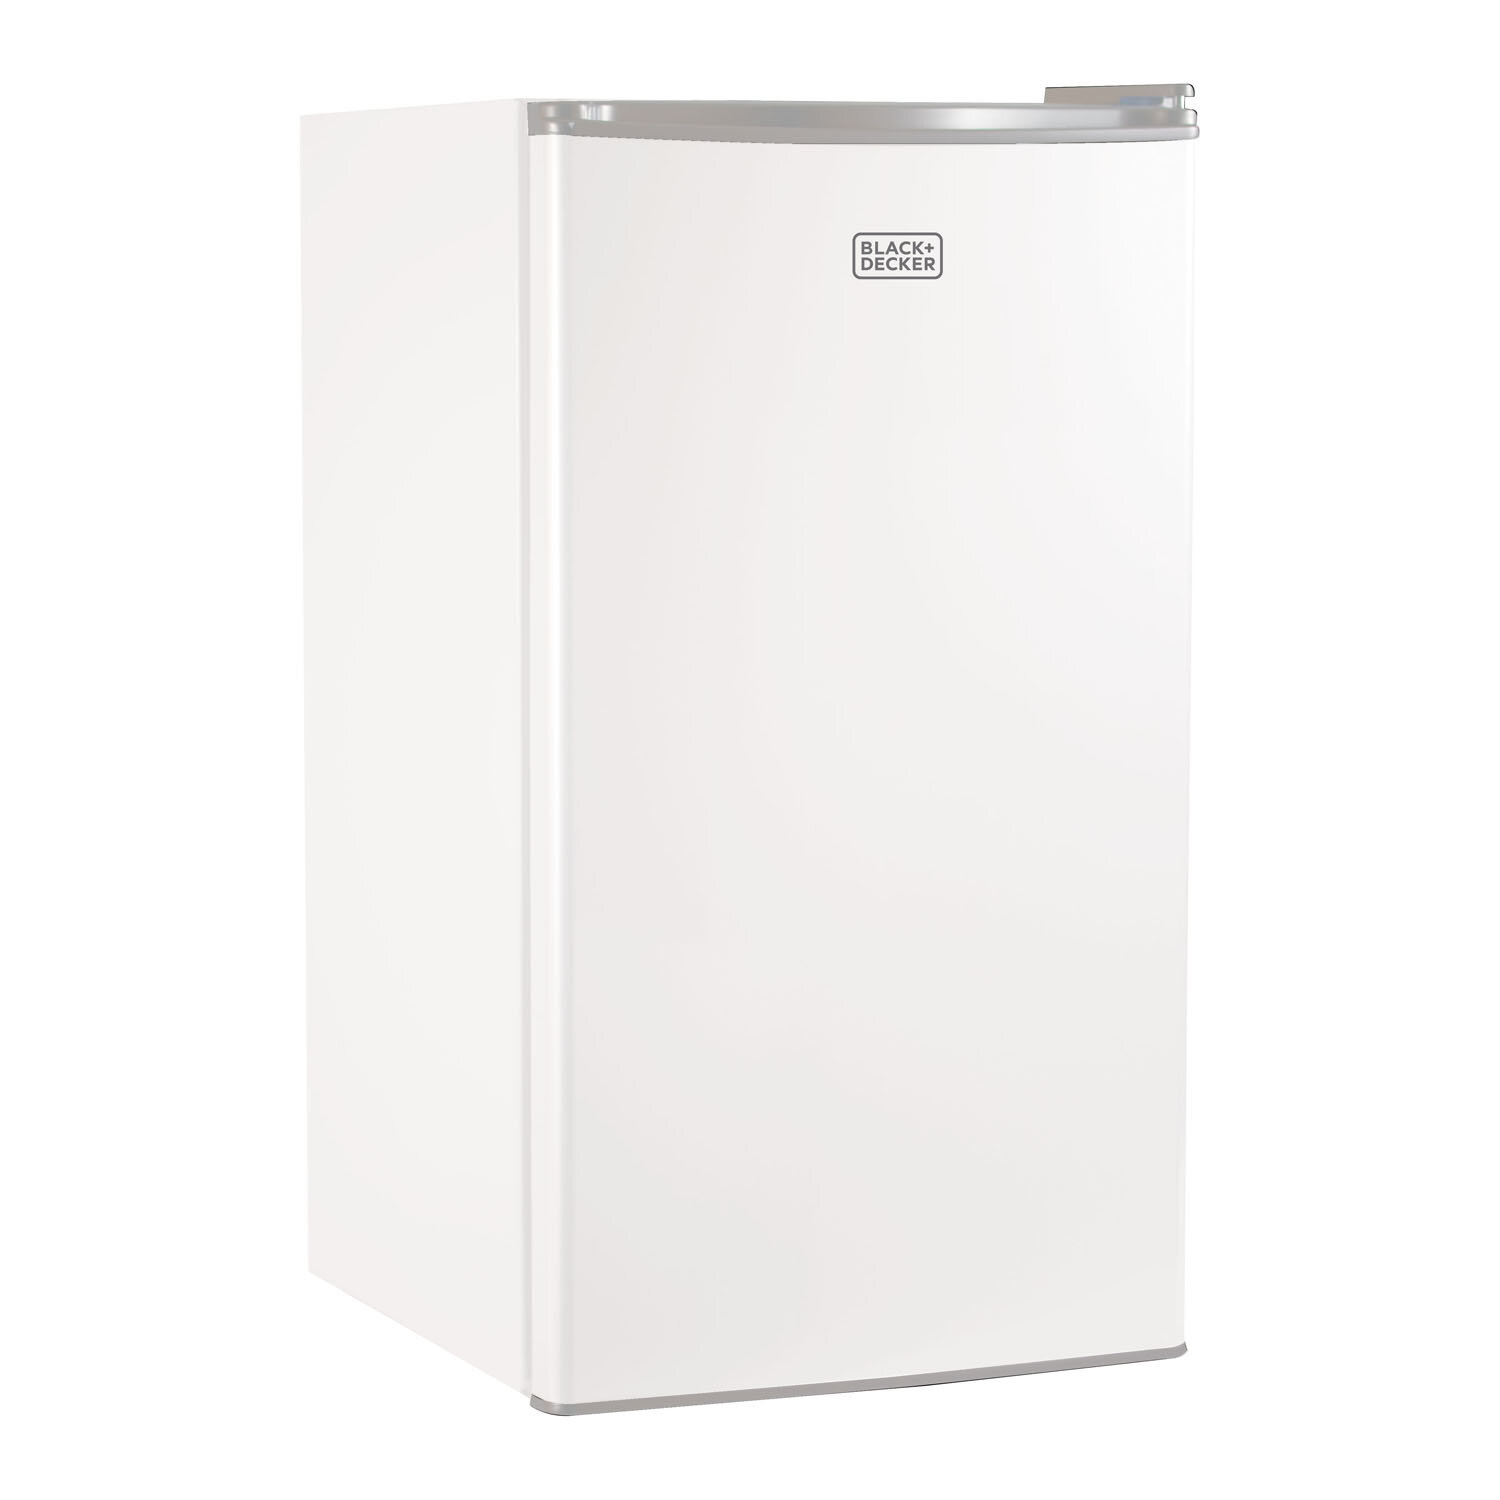 https://assets.wfcdn.com/im/04728873/compr-r85/3239/32397584/blackdecker-bcrk-series-32-cubic-feet-freestanding-mini-fridge-with-freezer.jpg